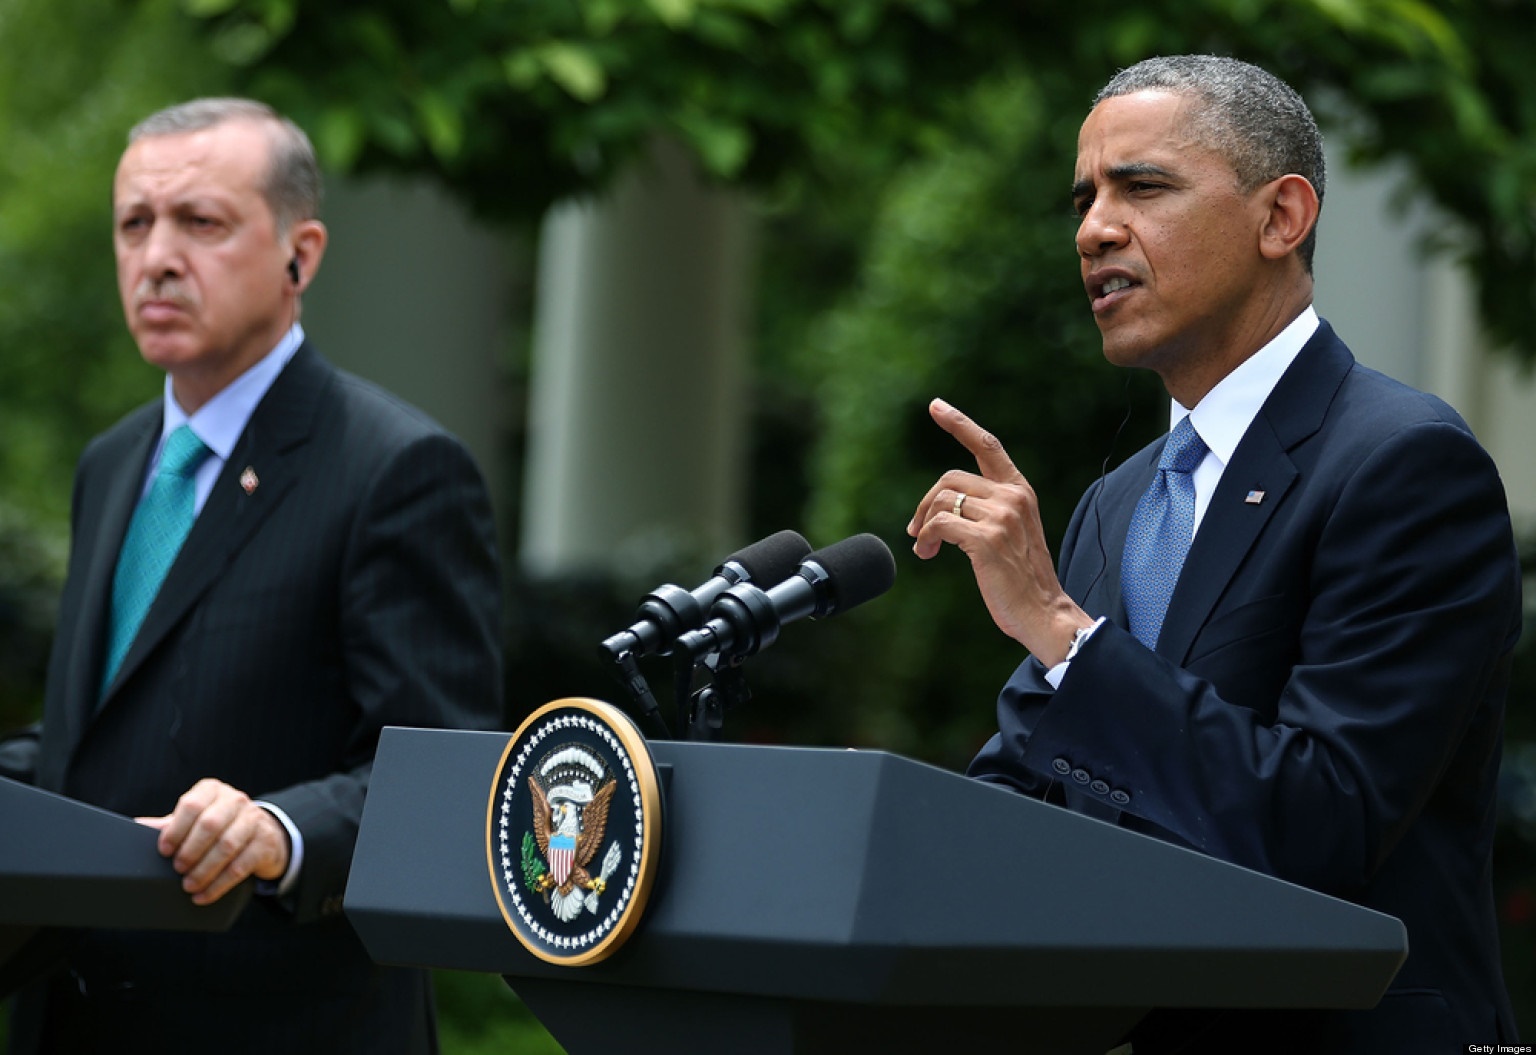 کارشناس ترکیه: اردوغان فقط شعار می دهد، با تهدید آمریکا کوتاه می آید